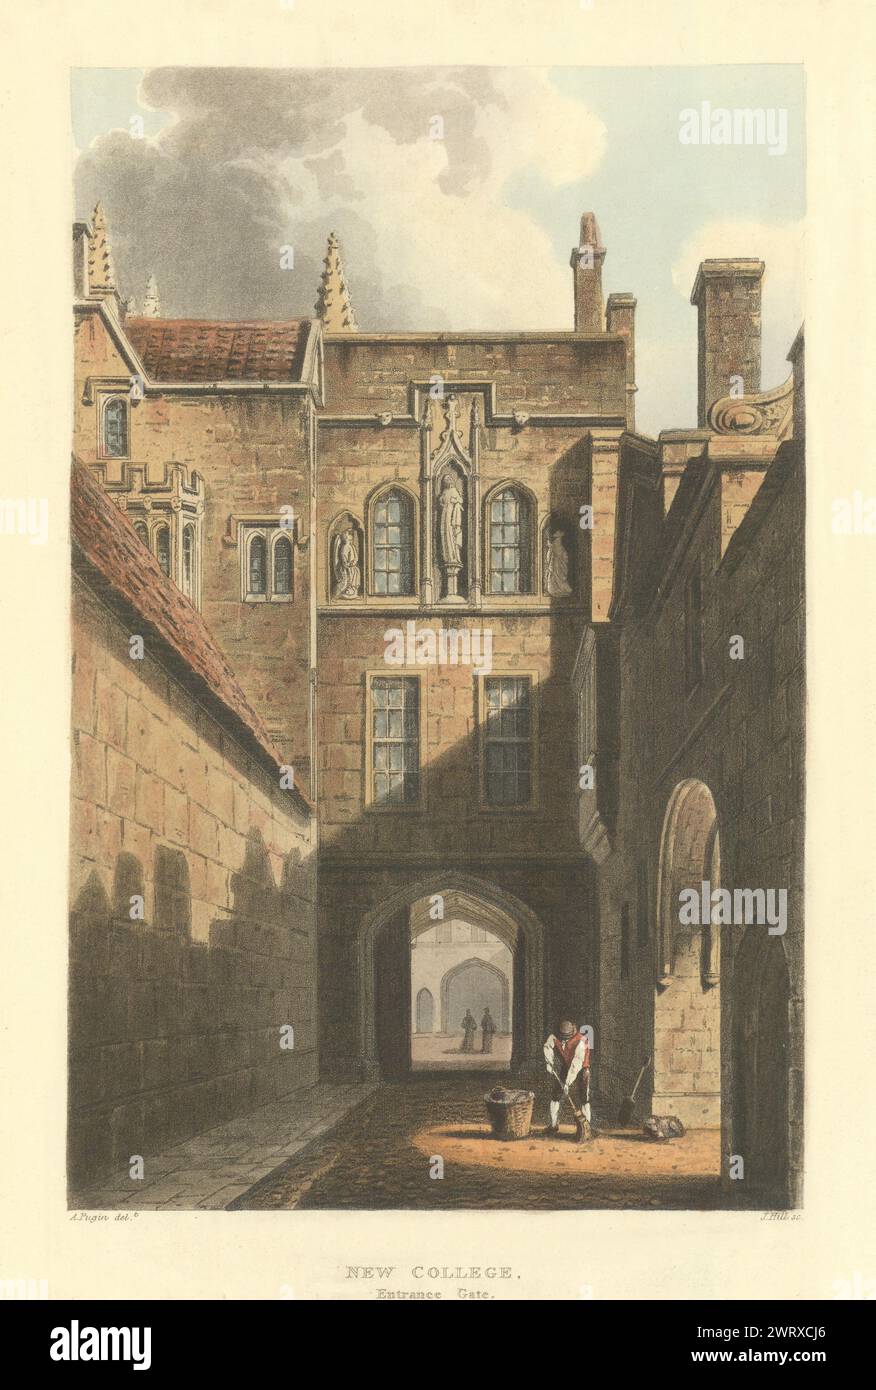 Eingangstor Für Das Neue College. Ackermanns alter Druck der Oxford University 1814 Stockfoto